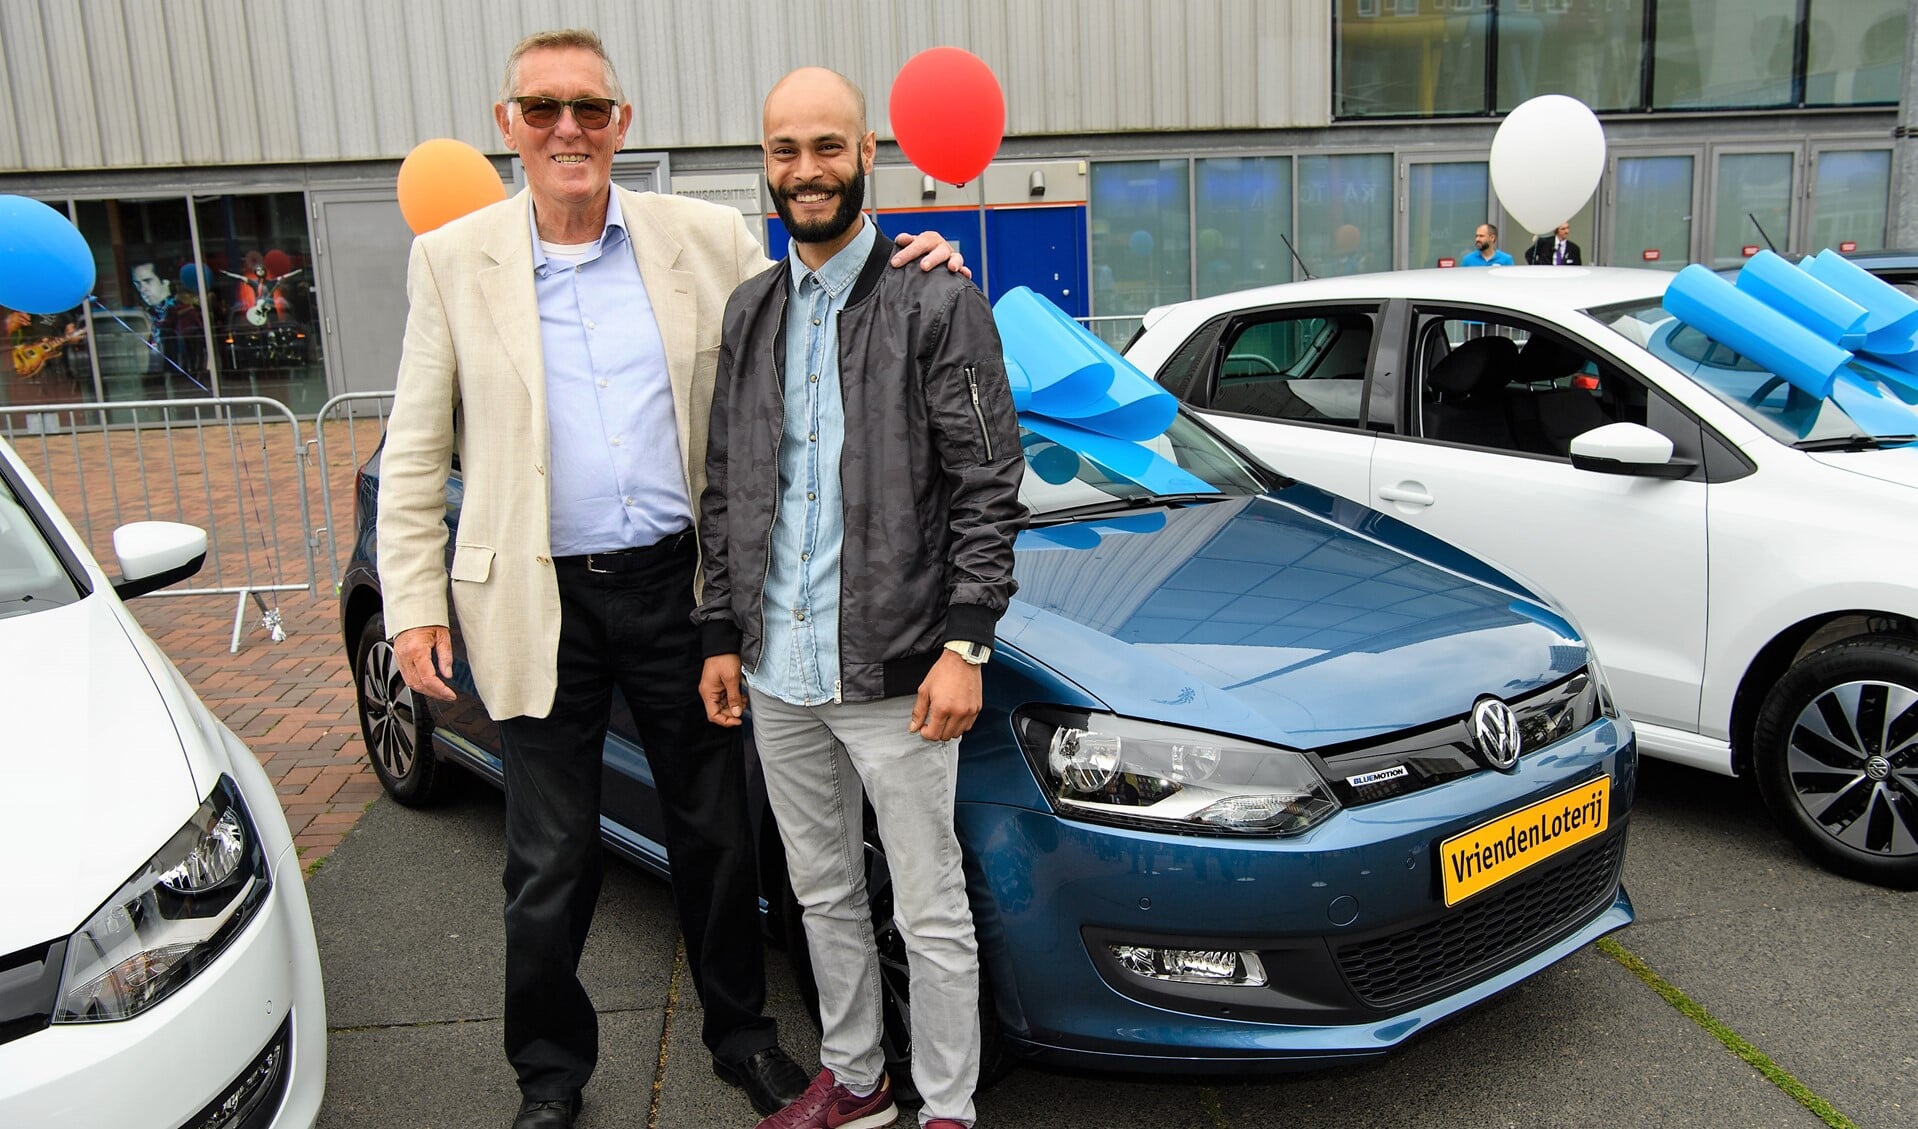 Roland uit Voorburg, hier met zijn zoon, wint gloednieuwe Volkswagen Polo tijdens de Altijd Prijs Show van de VriendenLoterij (foto: Roy Beusker).